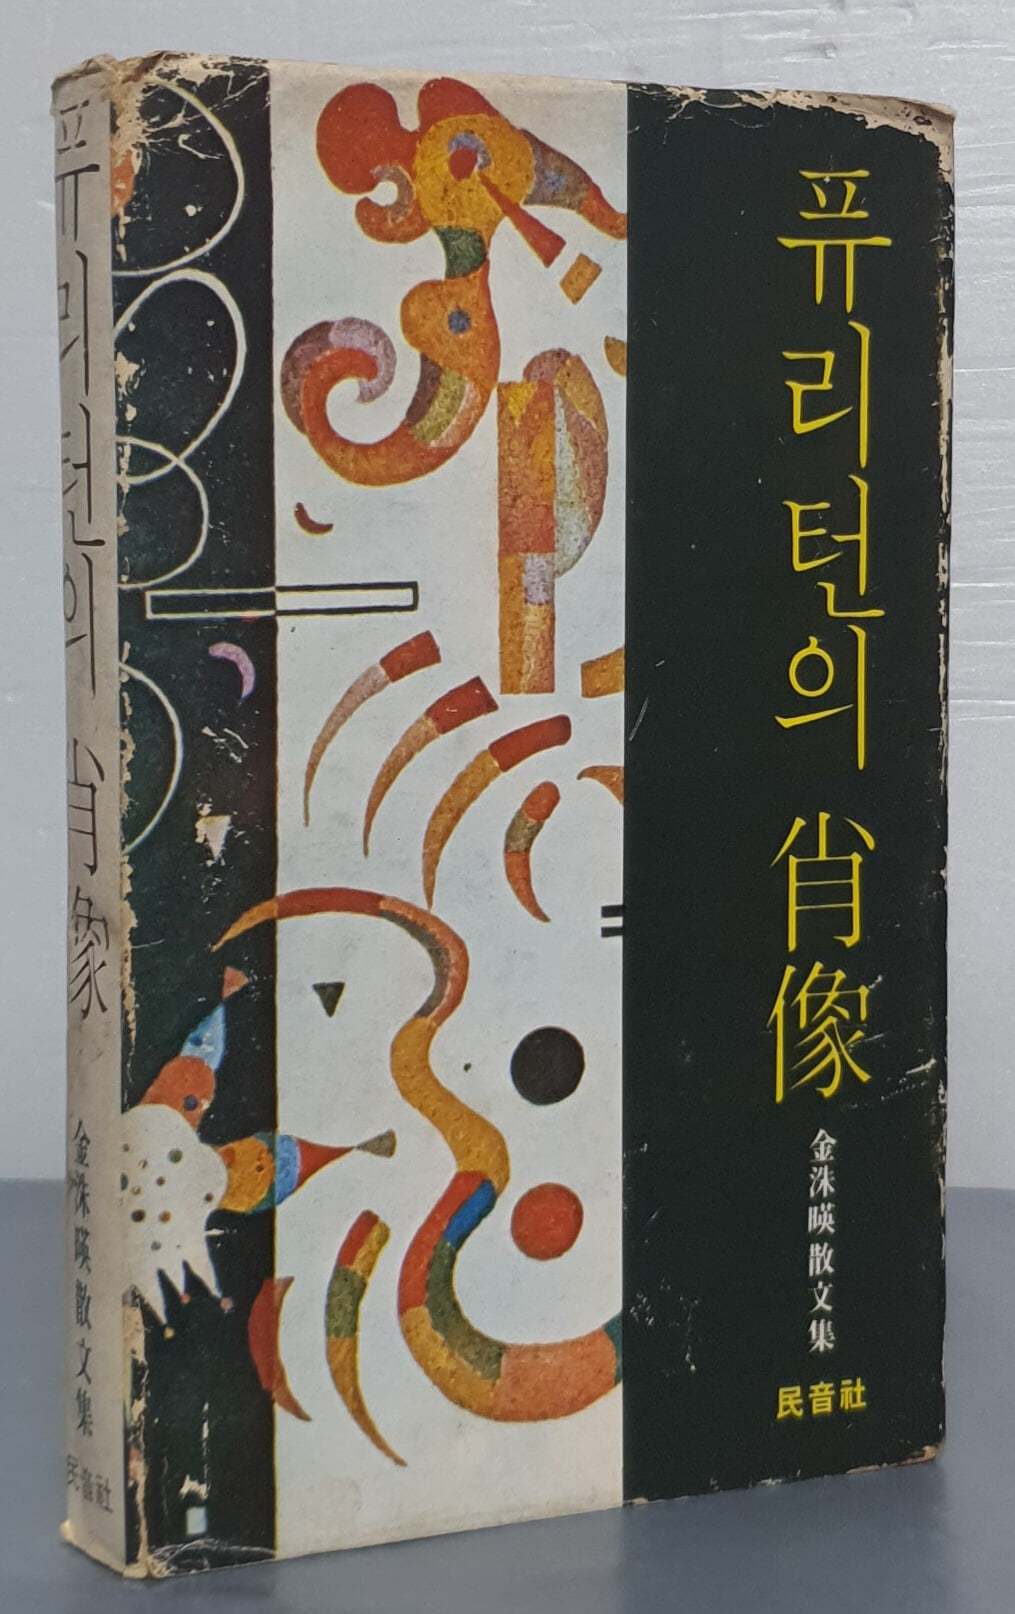 퓨리턴의 초상 - 김수영(1976년초판)